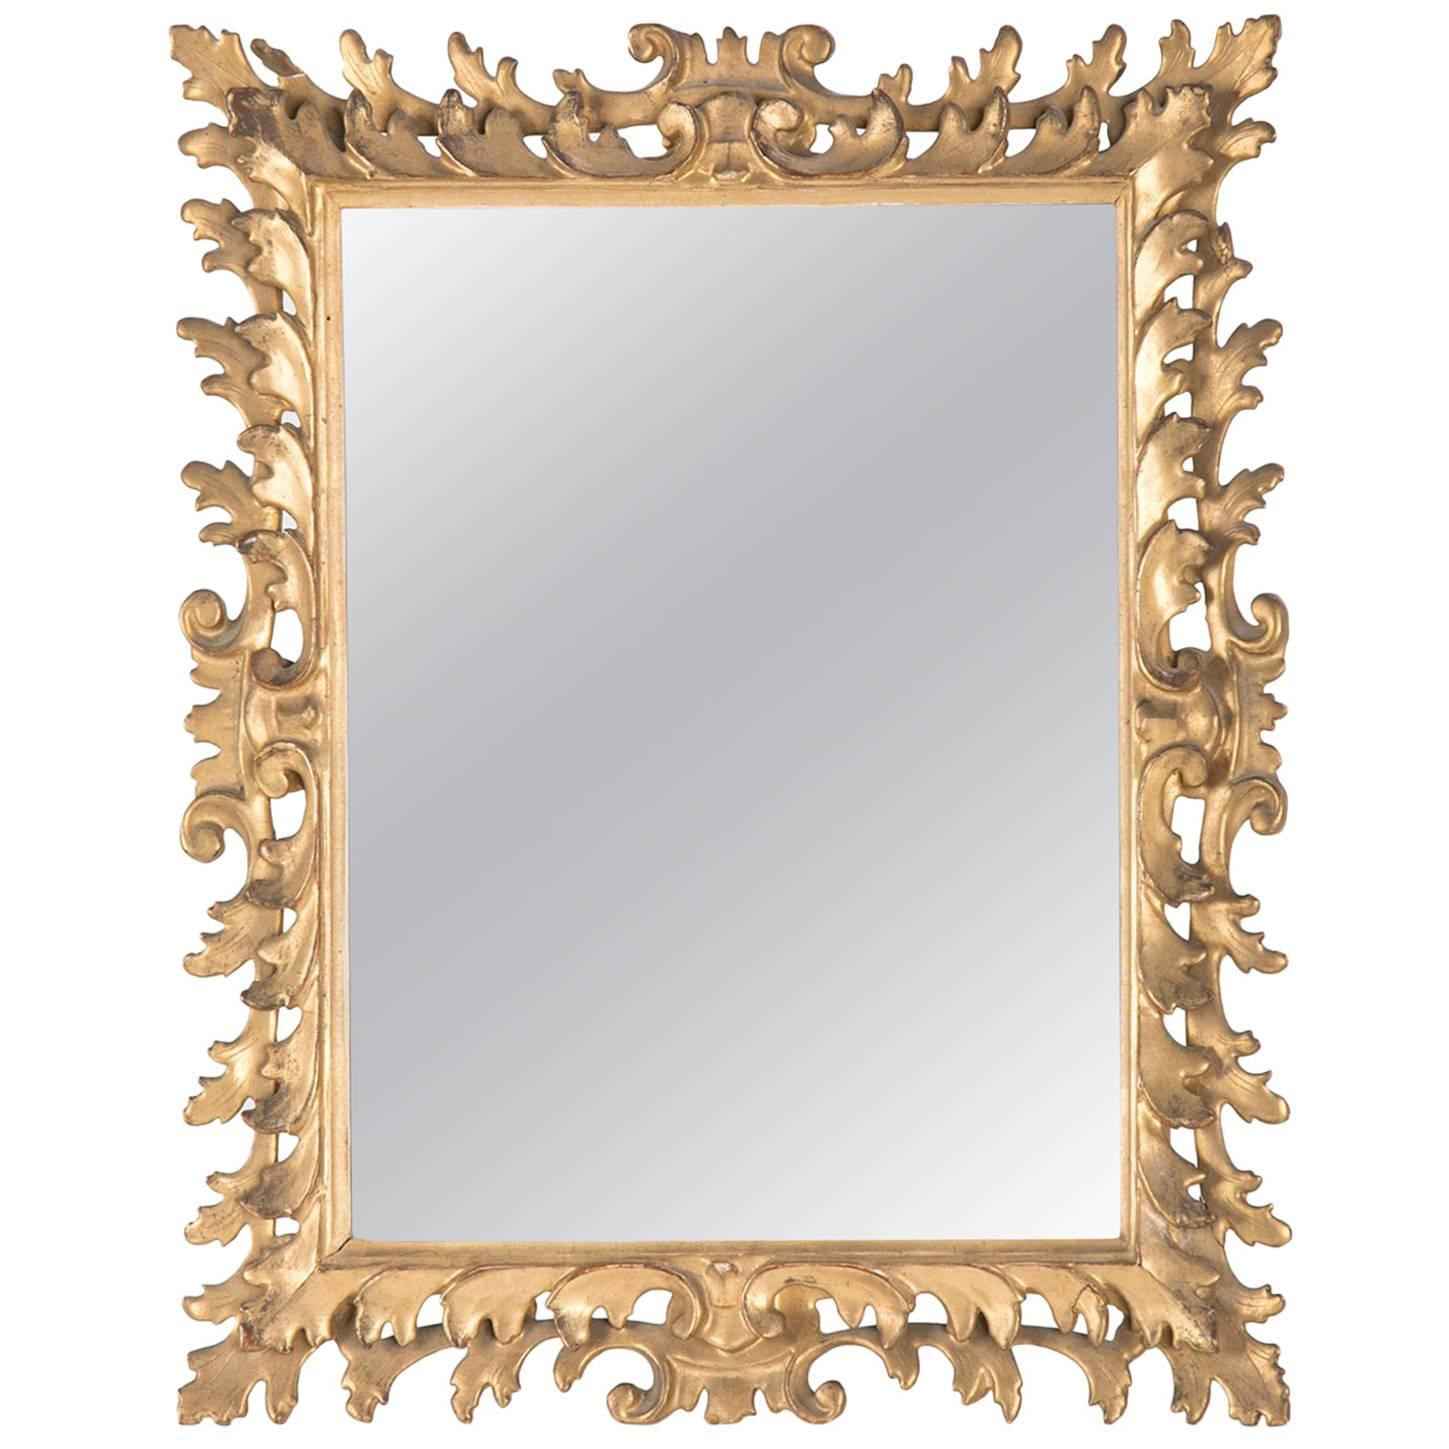 Italian Rococo Giltwood Tabletop Vainty Mirror